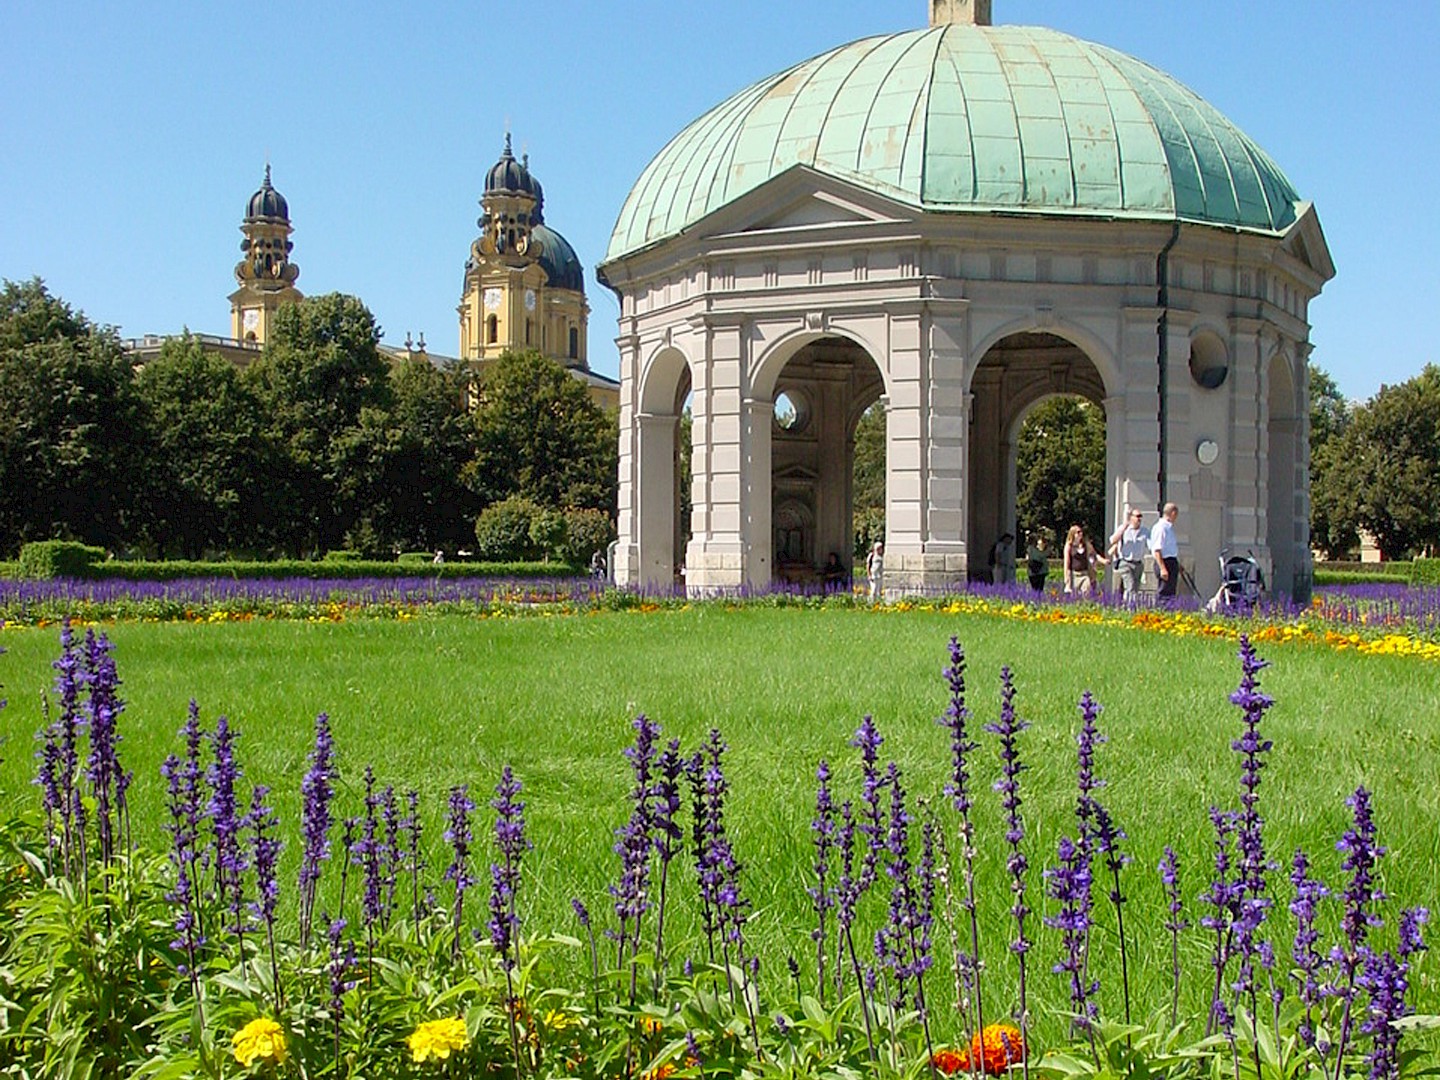 Der Hofgarten in München, wenn die Blumen blühen.